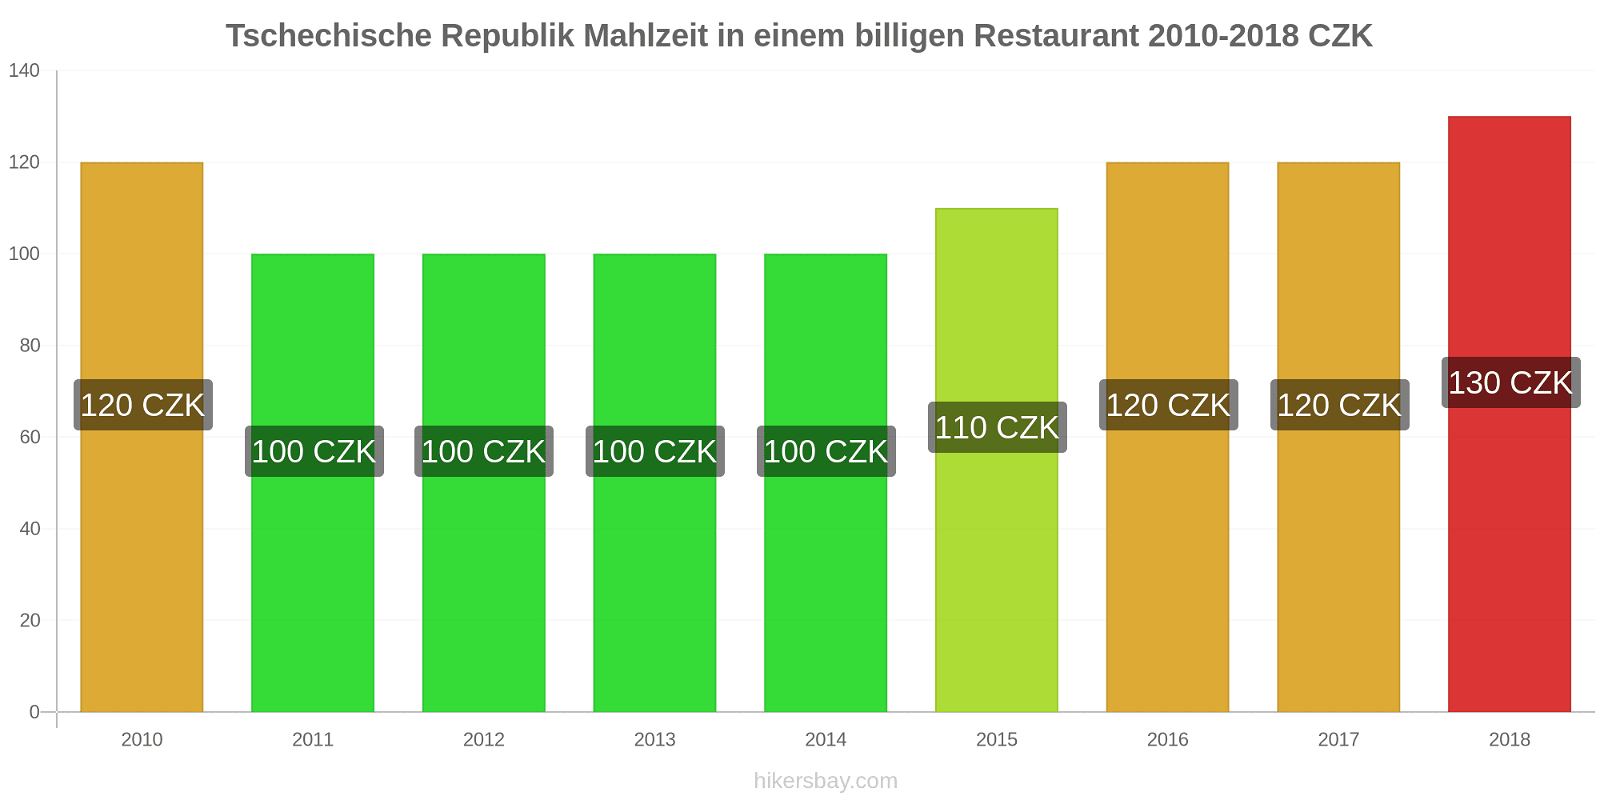 Tschechische Republik Preisänderungen Mahlzeit in einem billigen Restaurant hikersbay.com